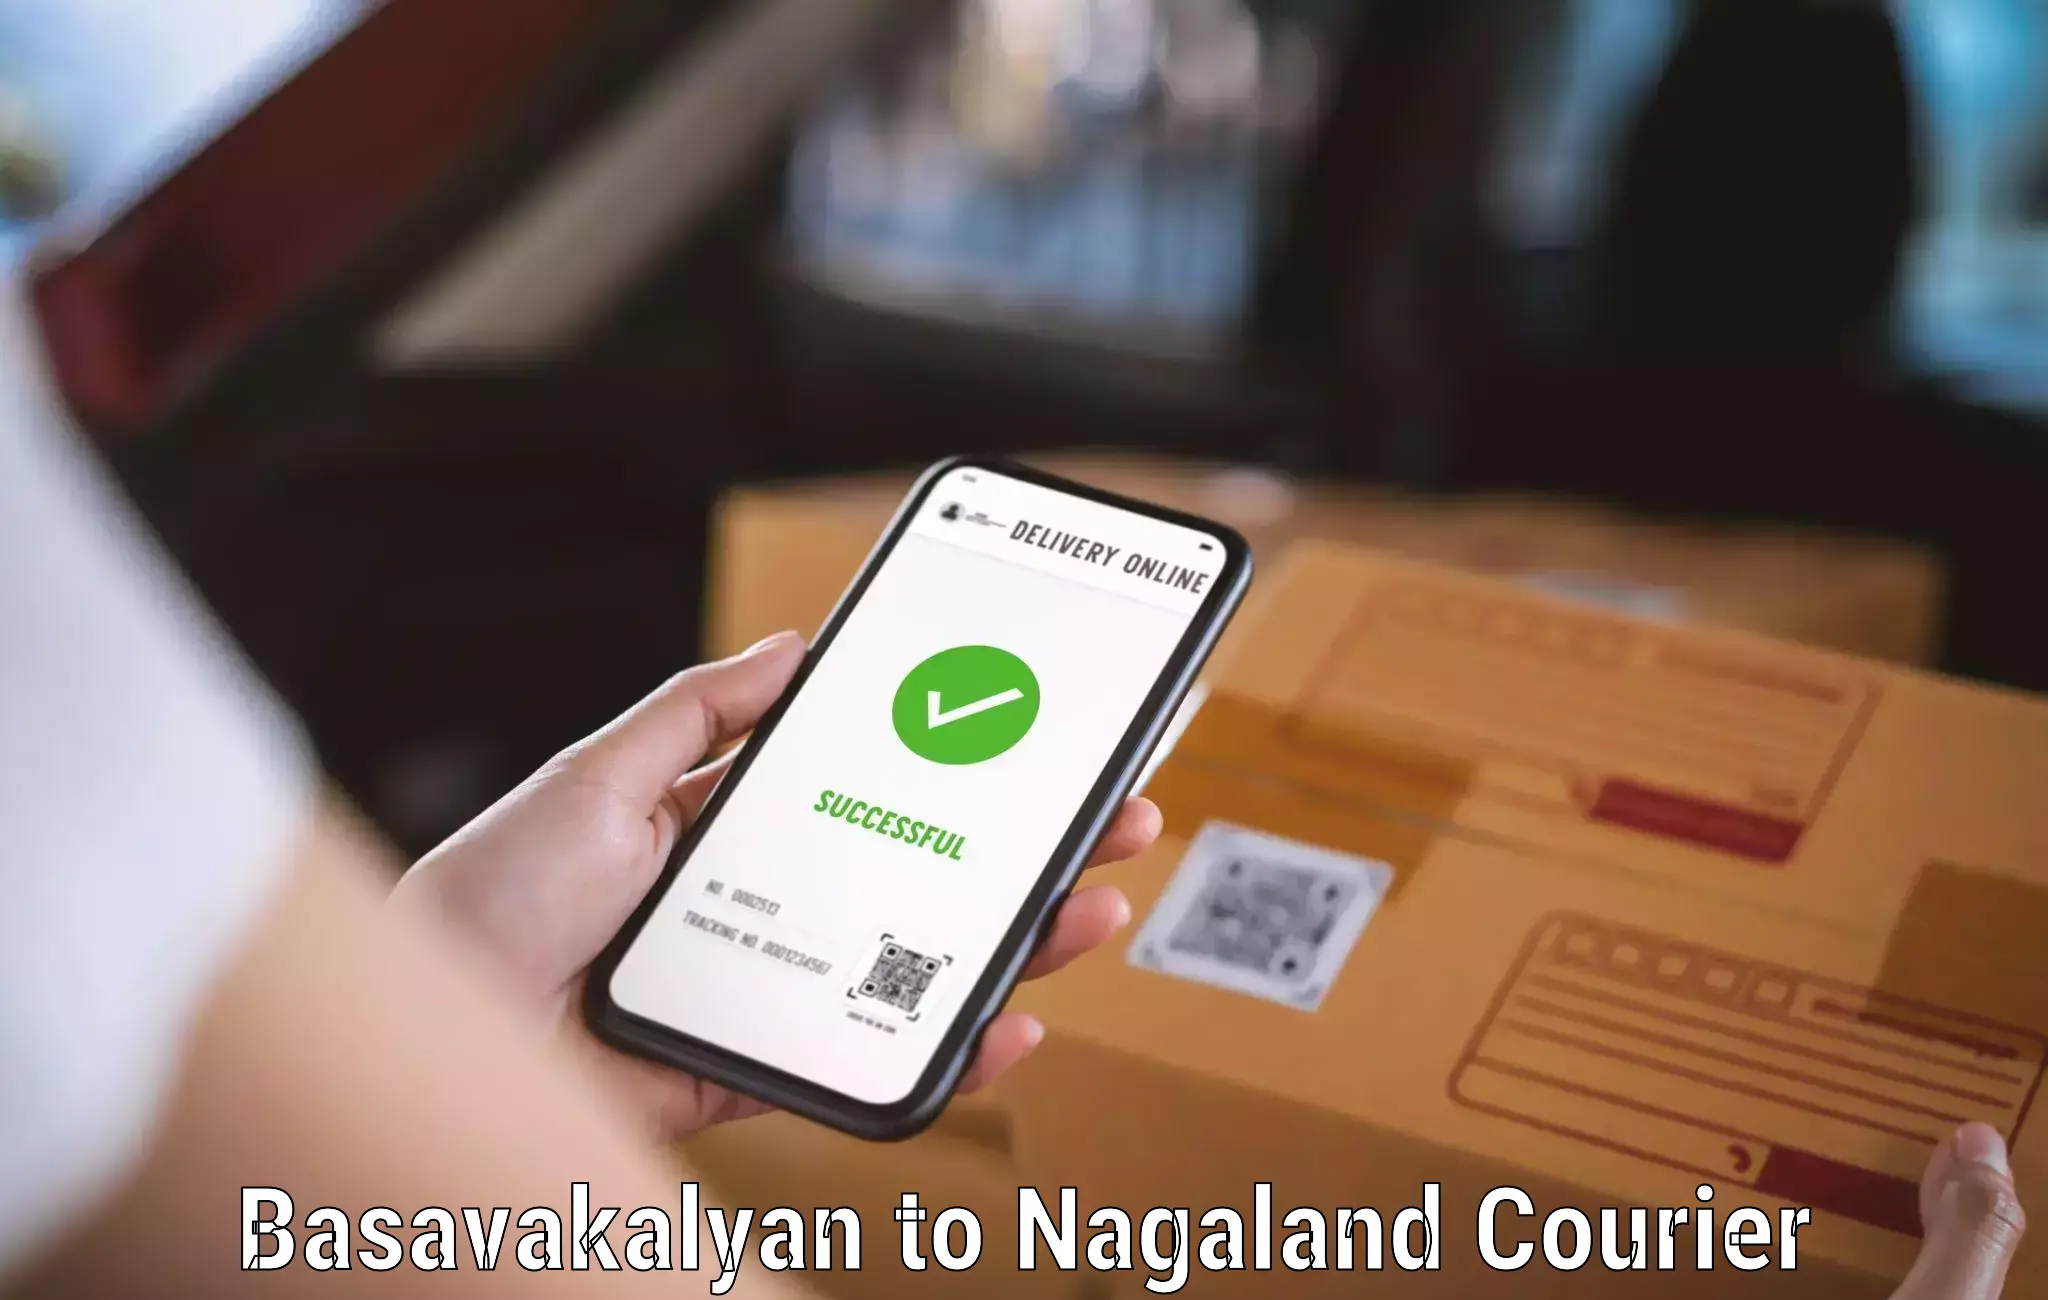 International parcel service Basavakalyan to NIT Nagaland